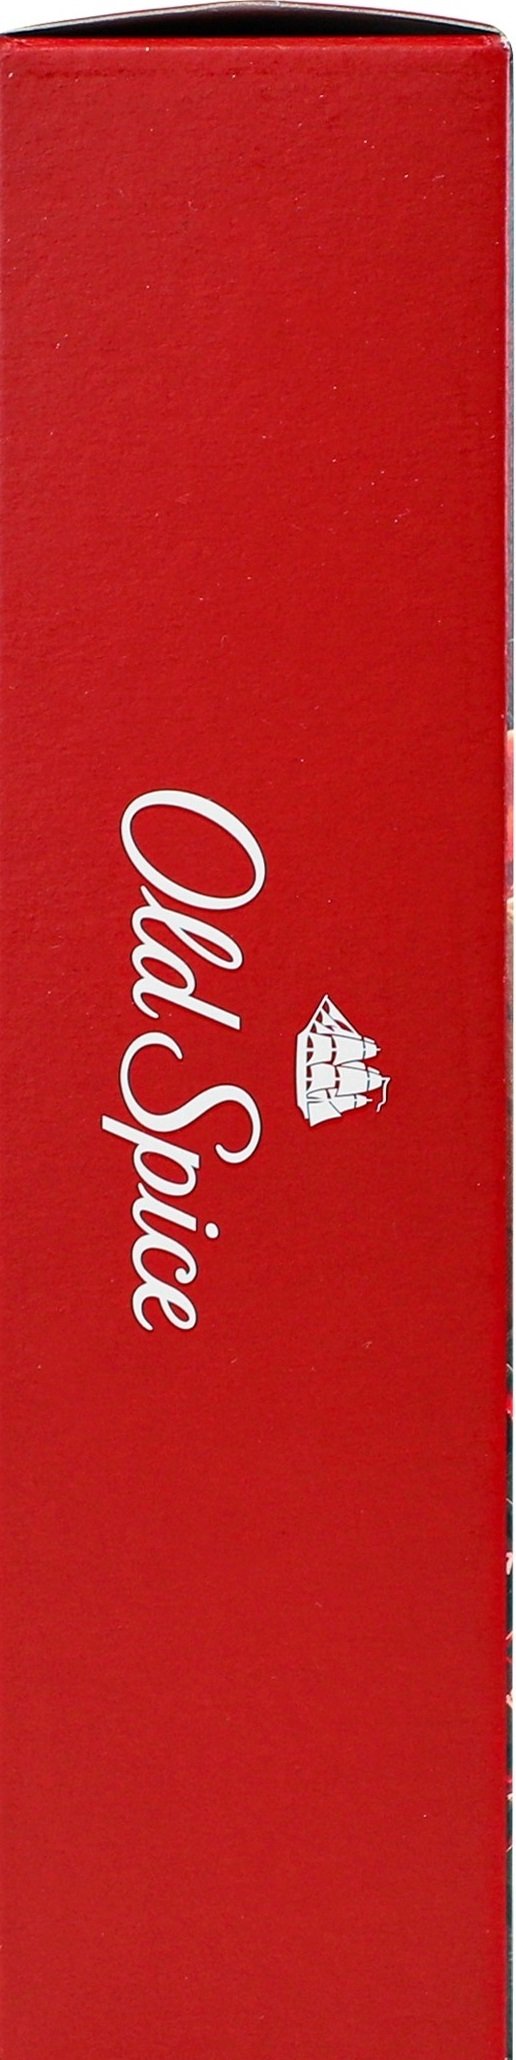 Подарочный набор Gamer Wolfthorn Гель для душа Old Spice 3в1 250мл + Твердый дезодорант 50мл + Игральные карты фото 4